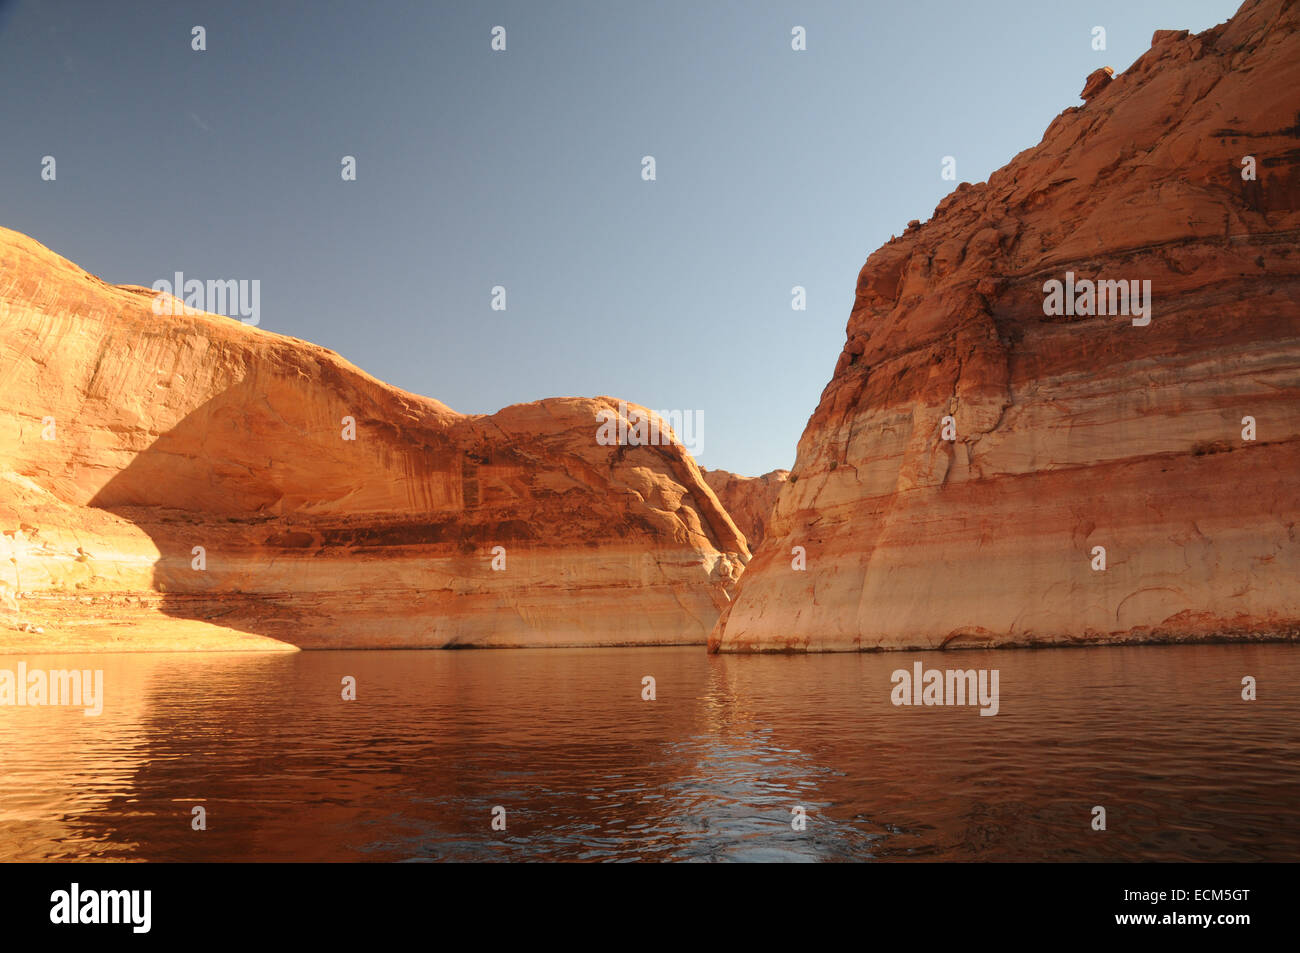 Die riesige Sandsteinmauern umschließt Lake Powell in Utah und Arizona Wüste, die durch eine niedrige Herbstsonne verbessert. Stockfoto